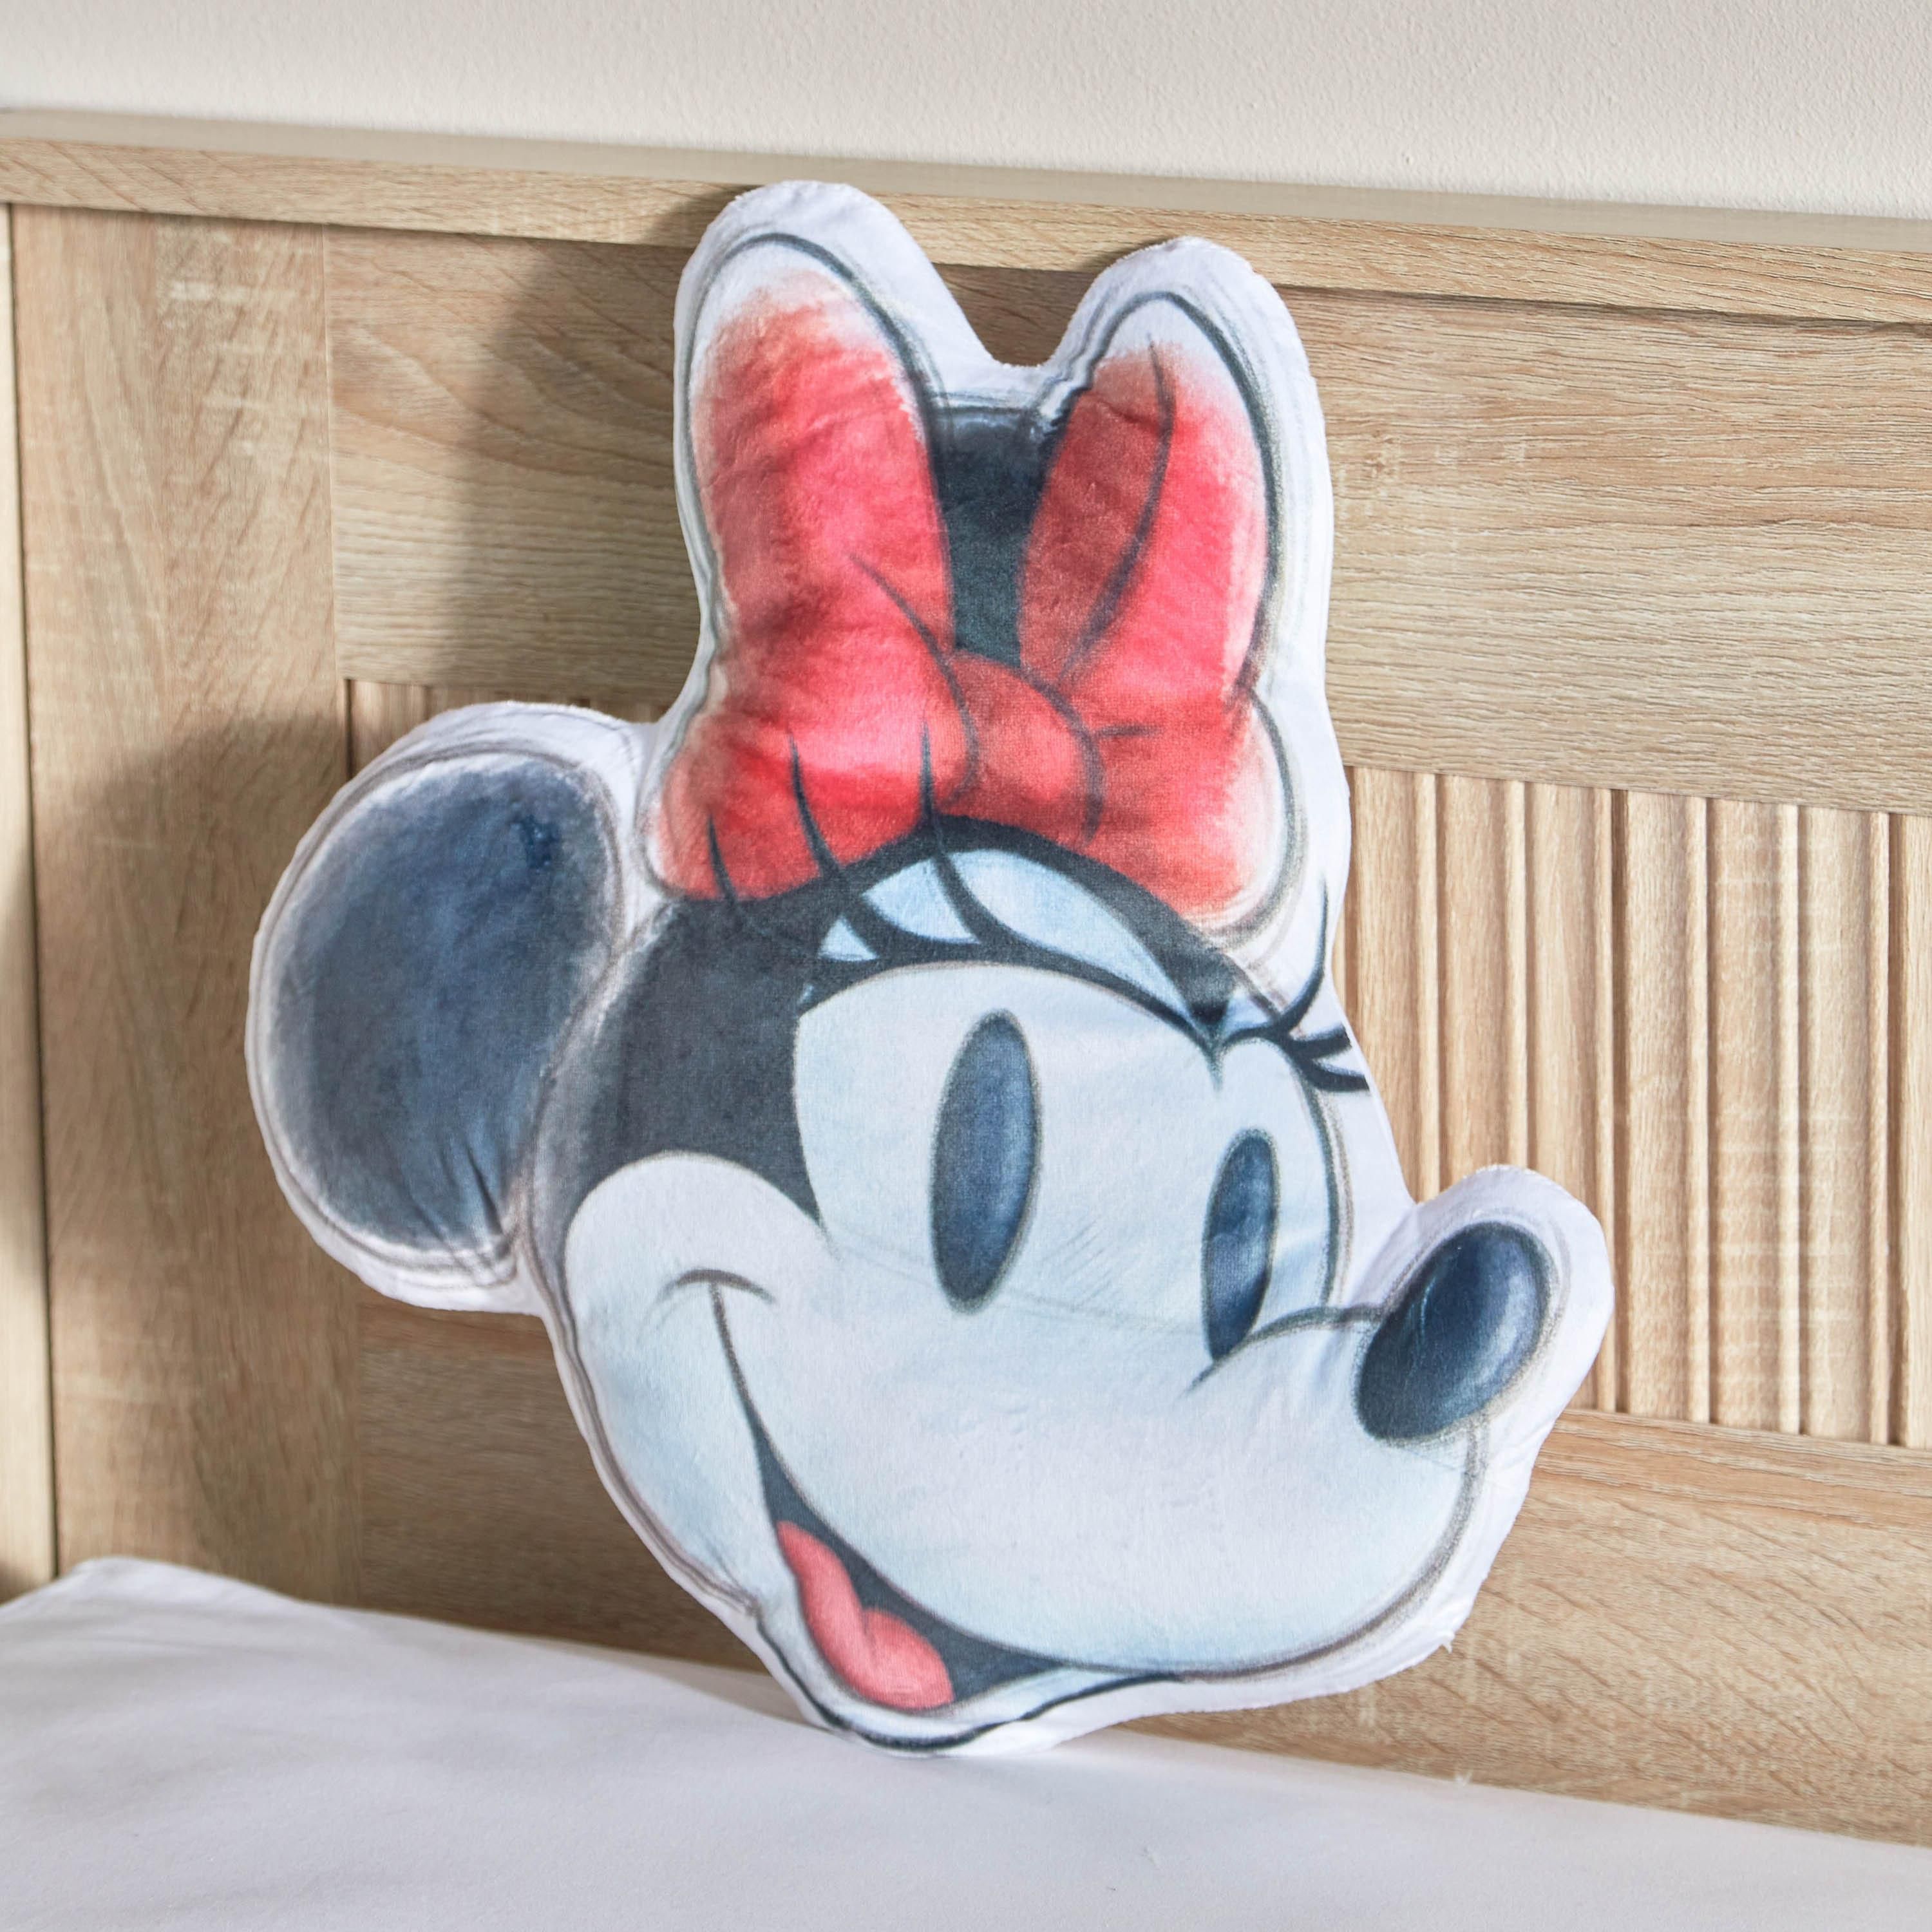 Minnie Shaped Cushion - 40 cm